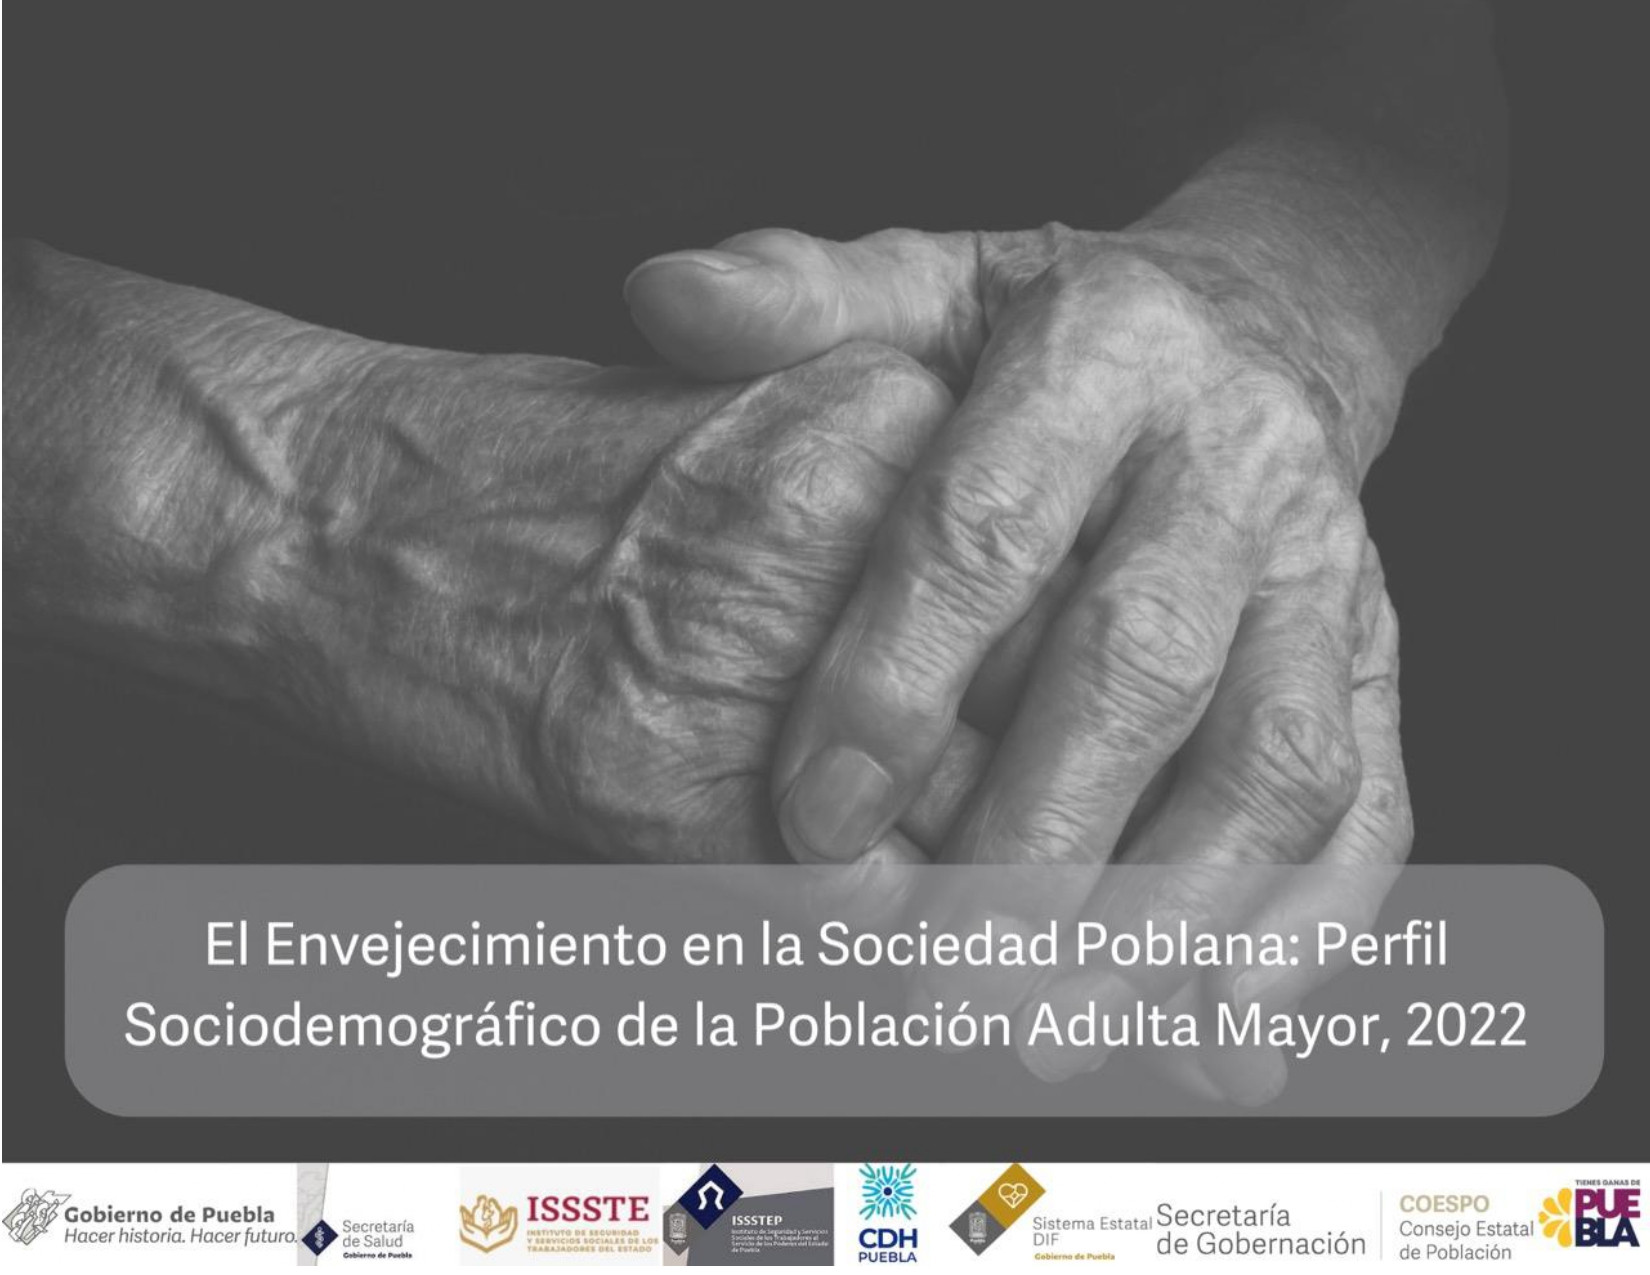 El Envejecimiento en la Sociedad Poblana: “Perfil Sociodemográfico de la Población Adulta Mayor"